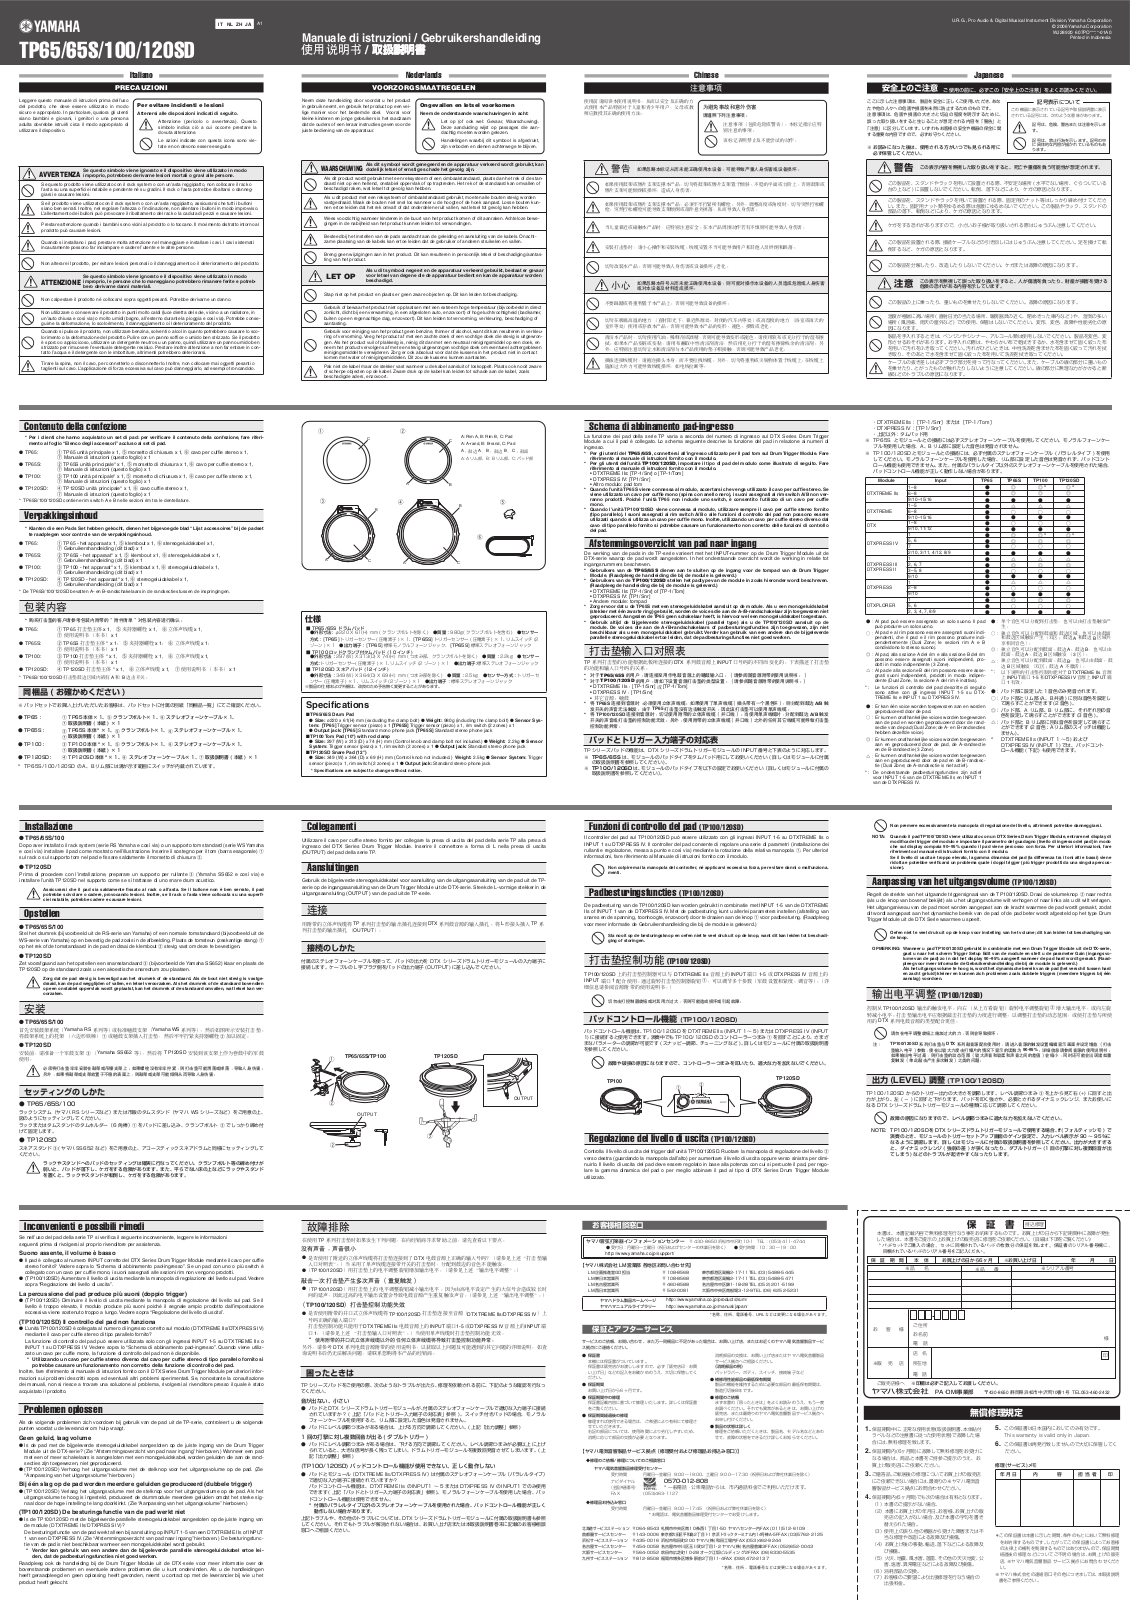 Yamaha TP-100, TP-120SD, TP-65S, TP-65 User Manual